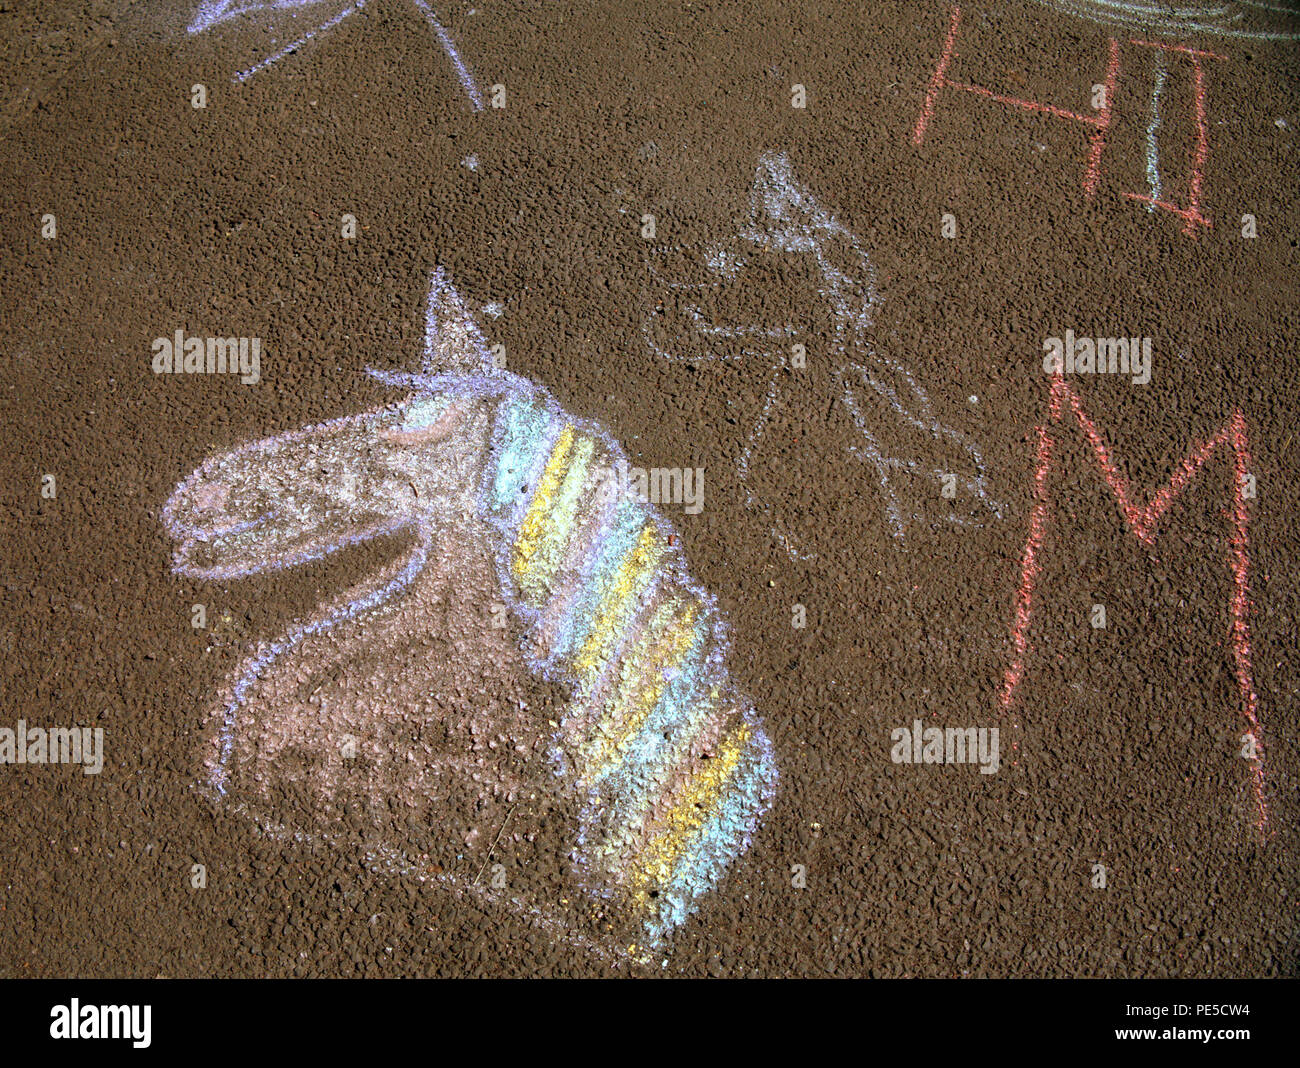 Kinder Kreide Zeichnung von einem Einhorn auf Asphalt Platz kopieren Stockfoto